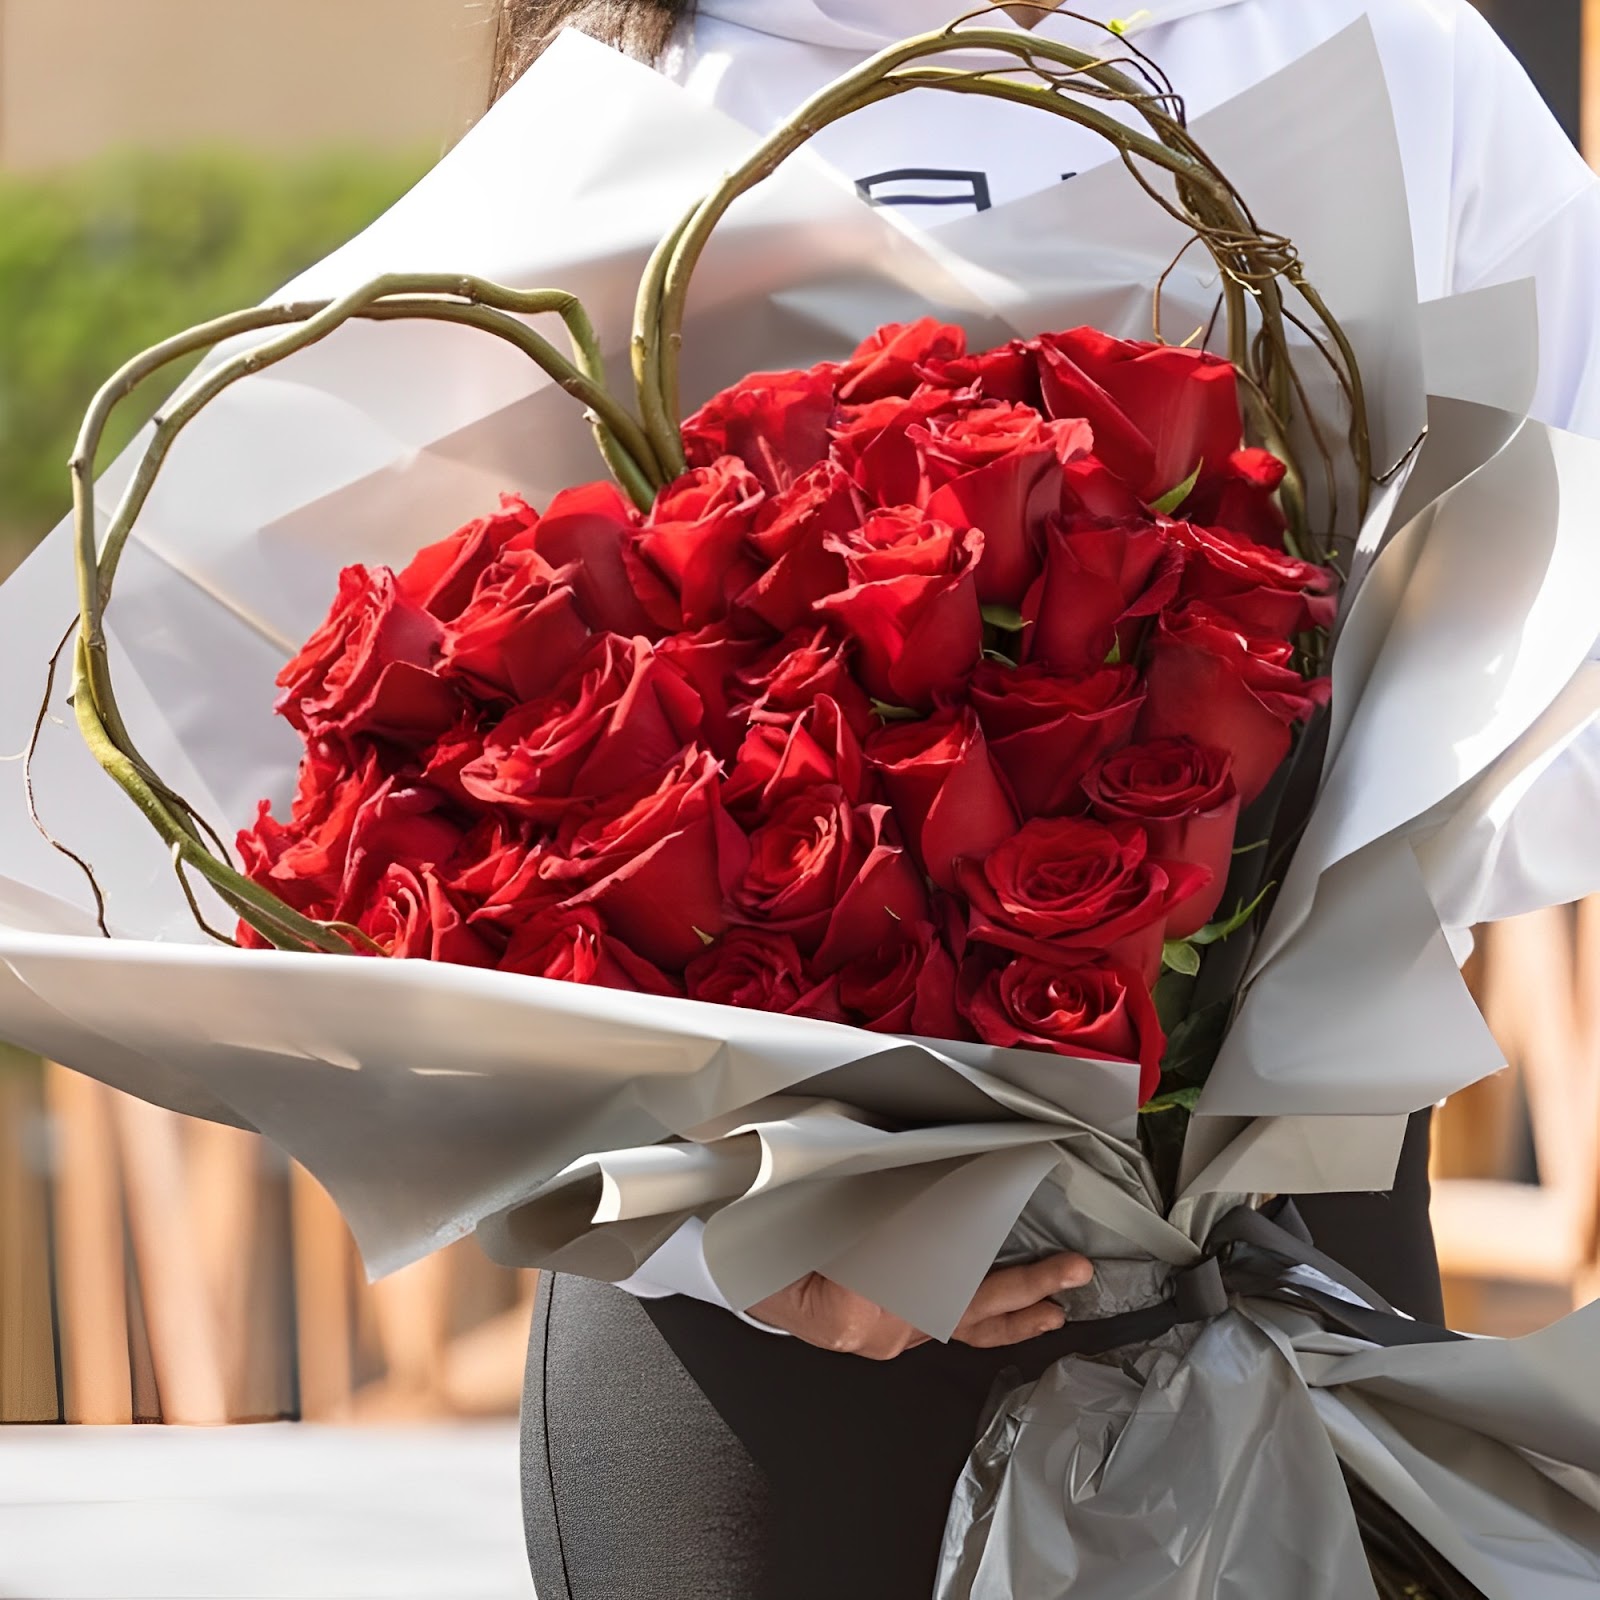 Hoa hồng đỏ được xếp thành hình trái tim cực lãng mạn